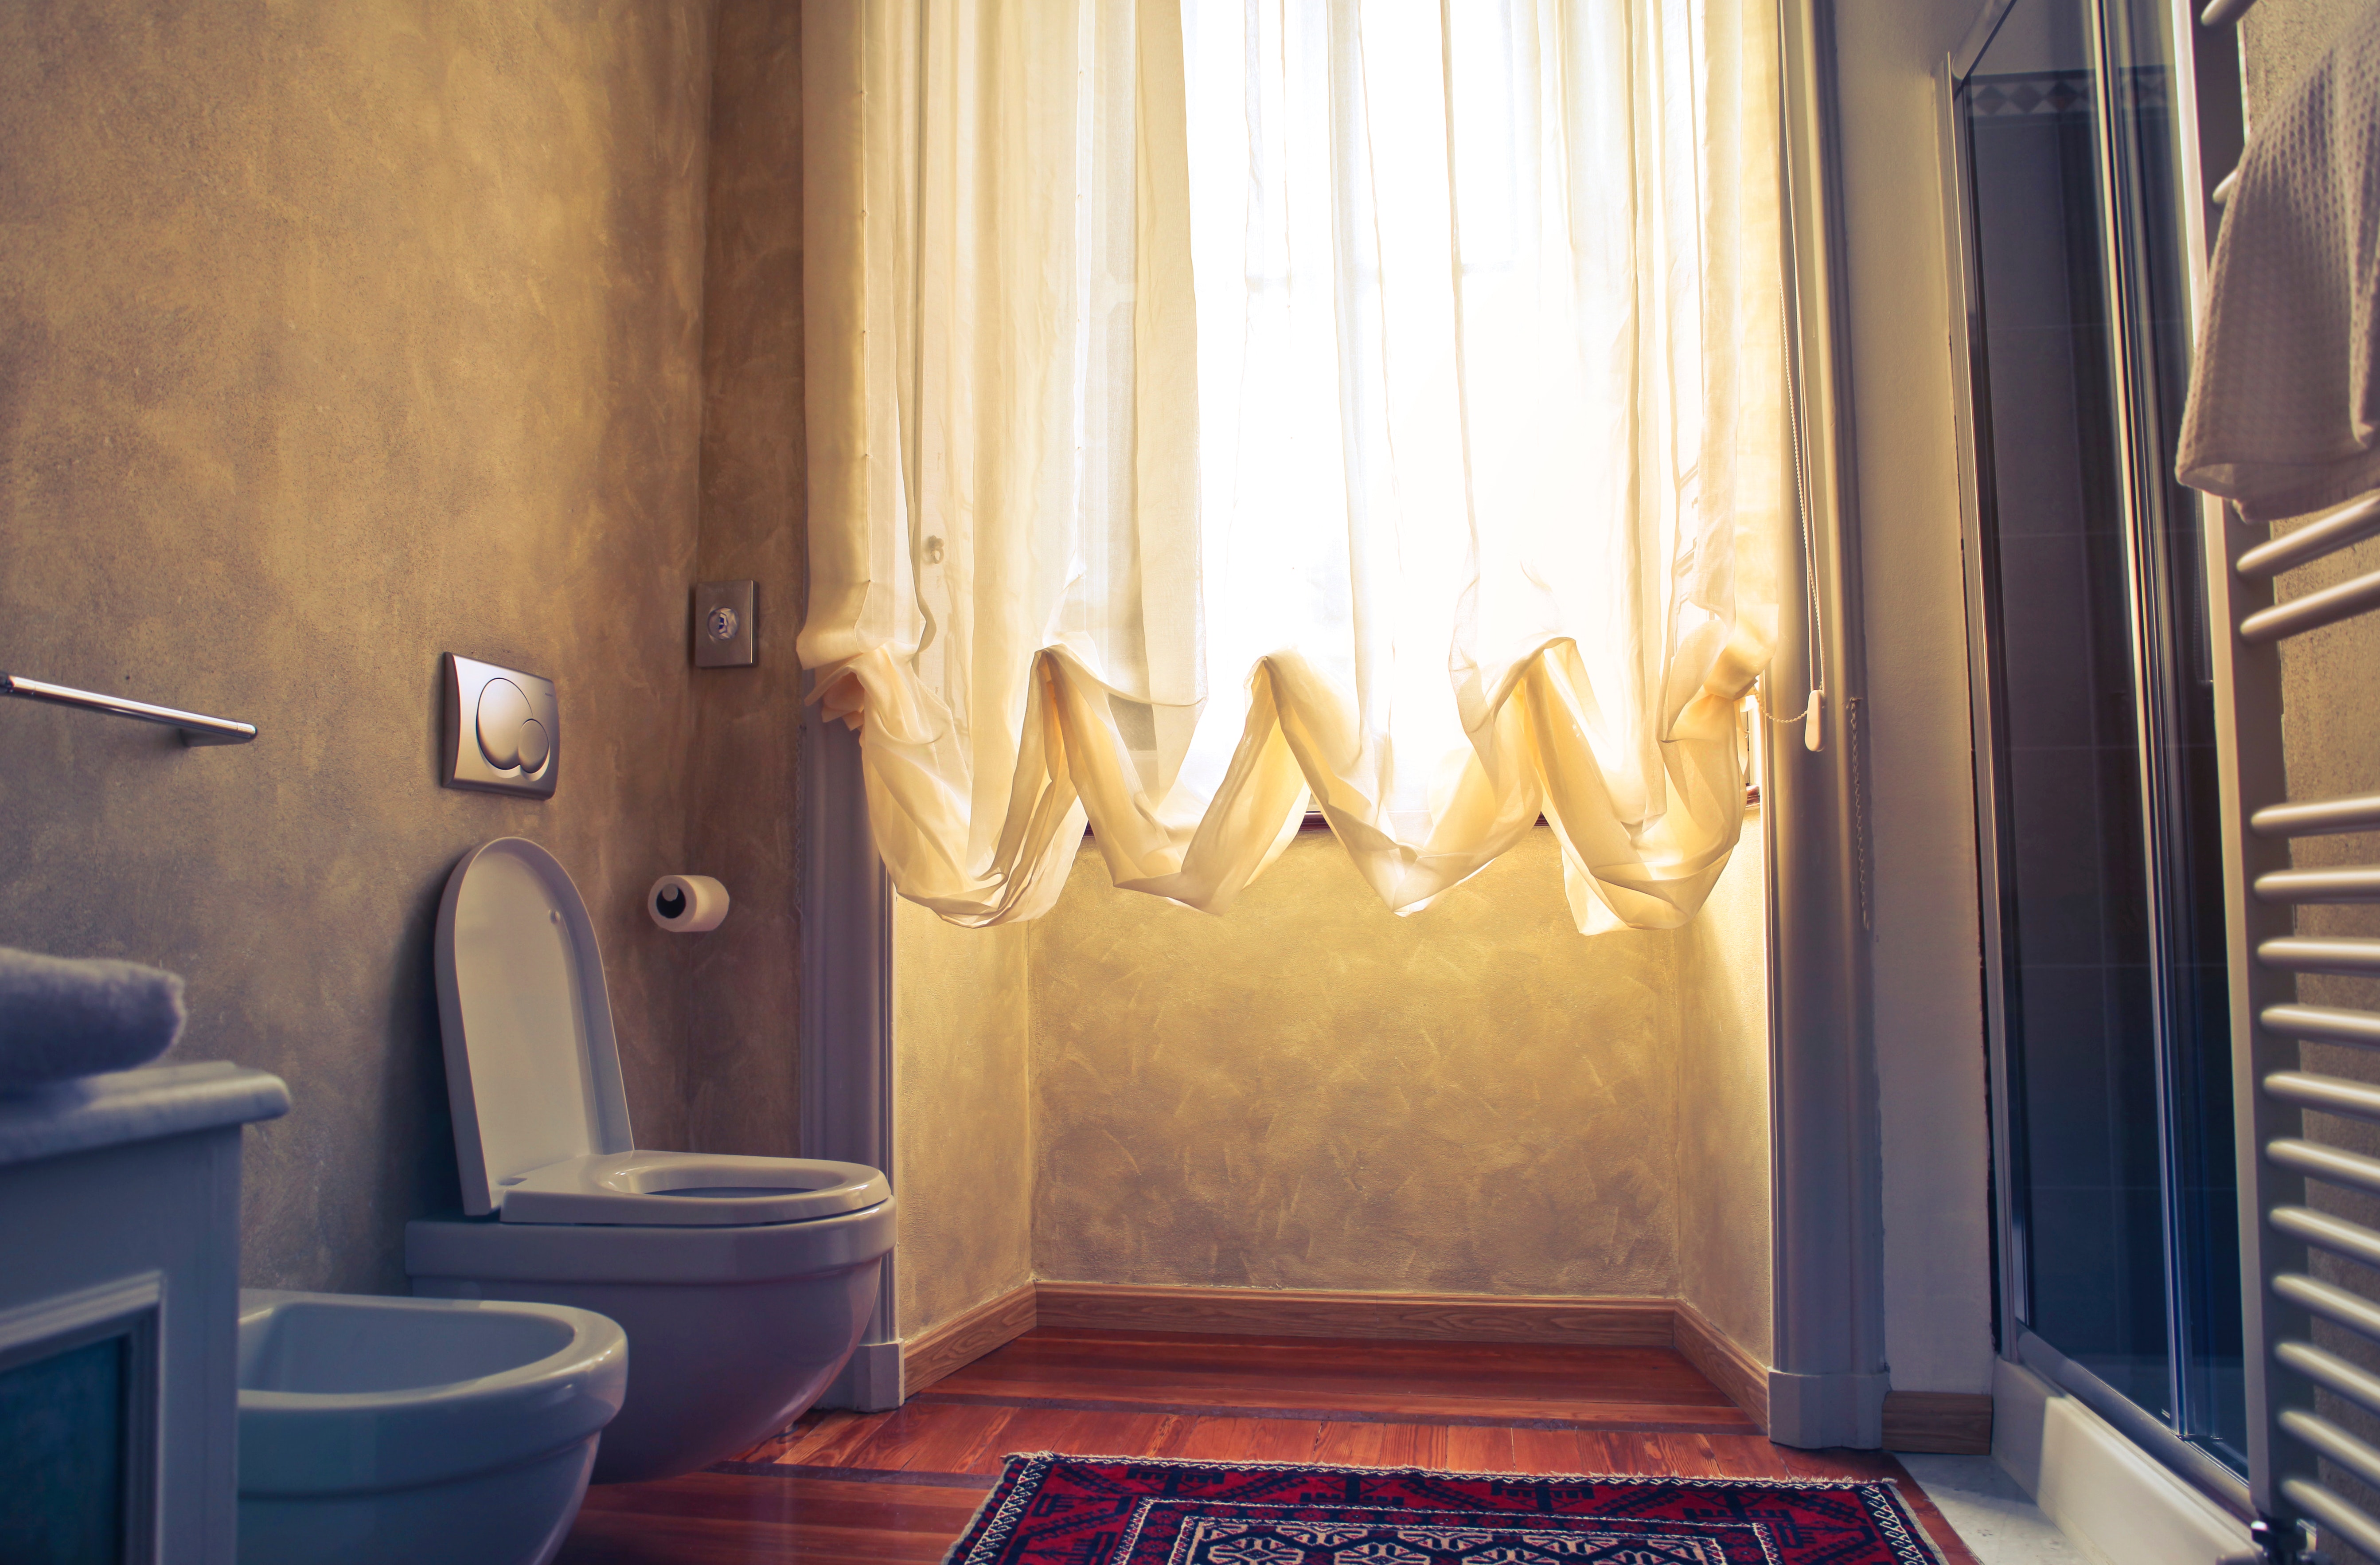 Clean Shower Curtain with Bleach